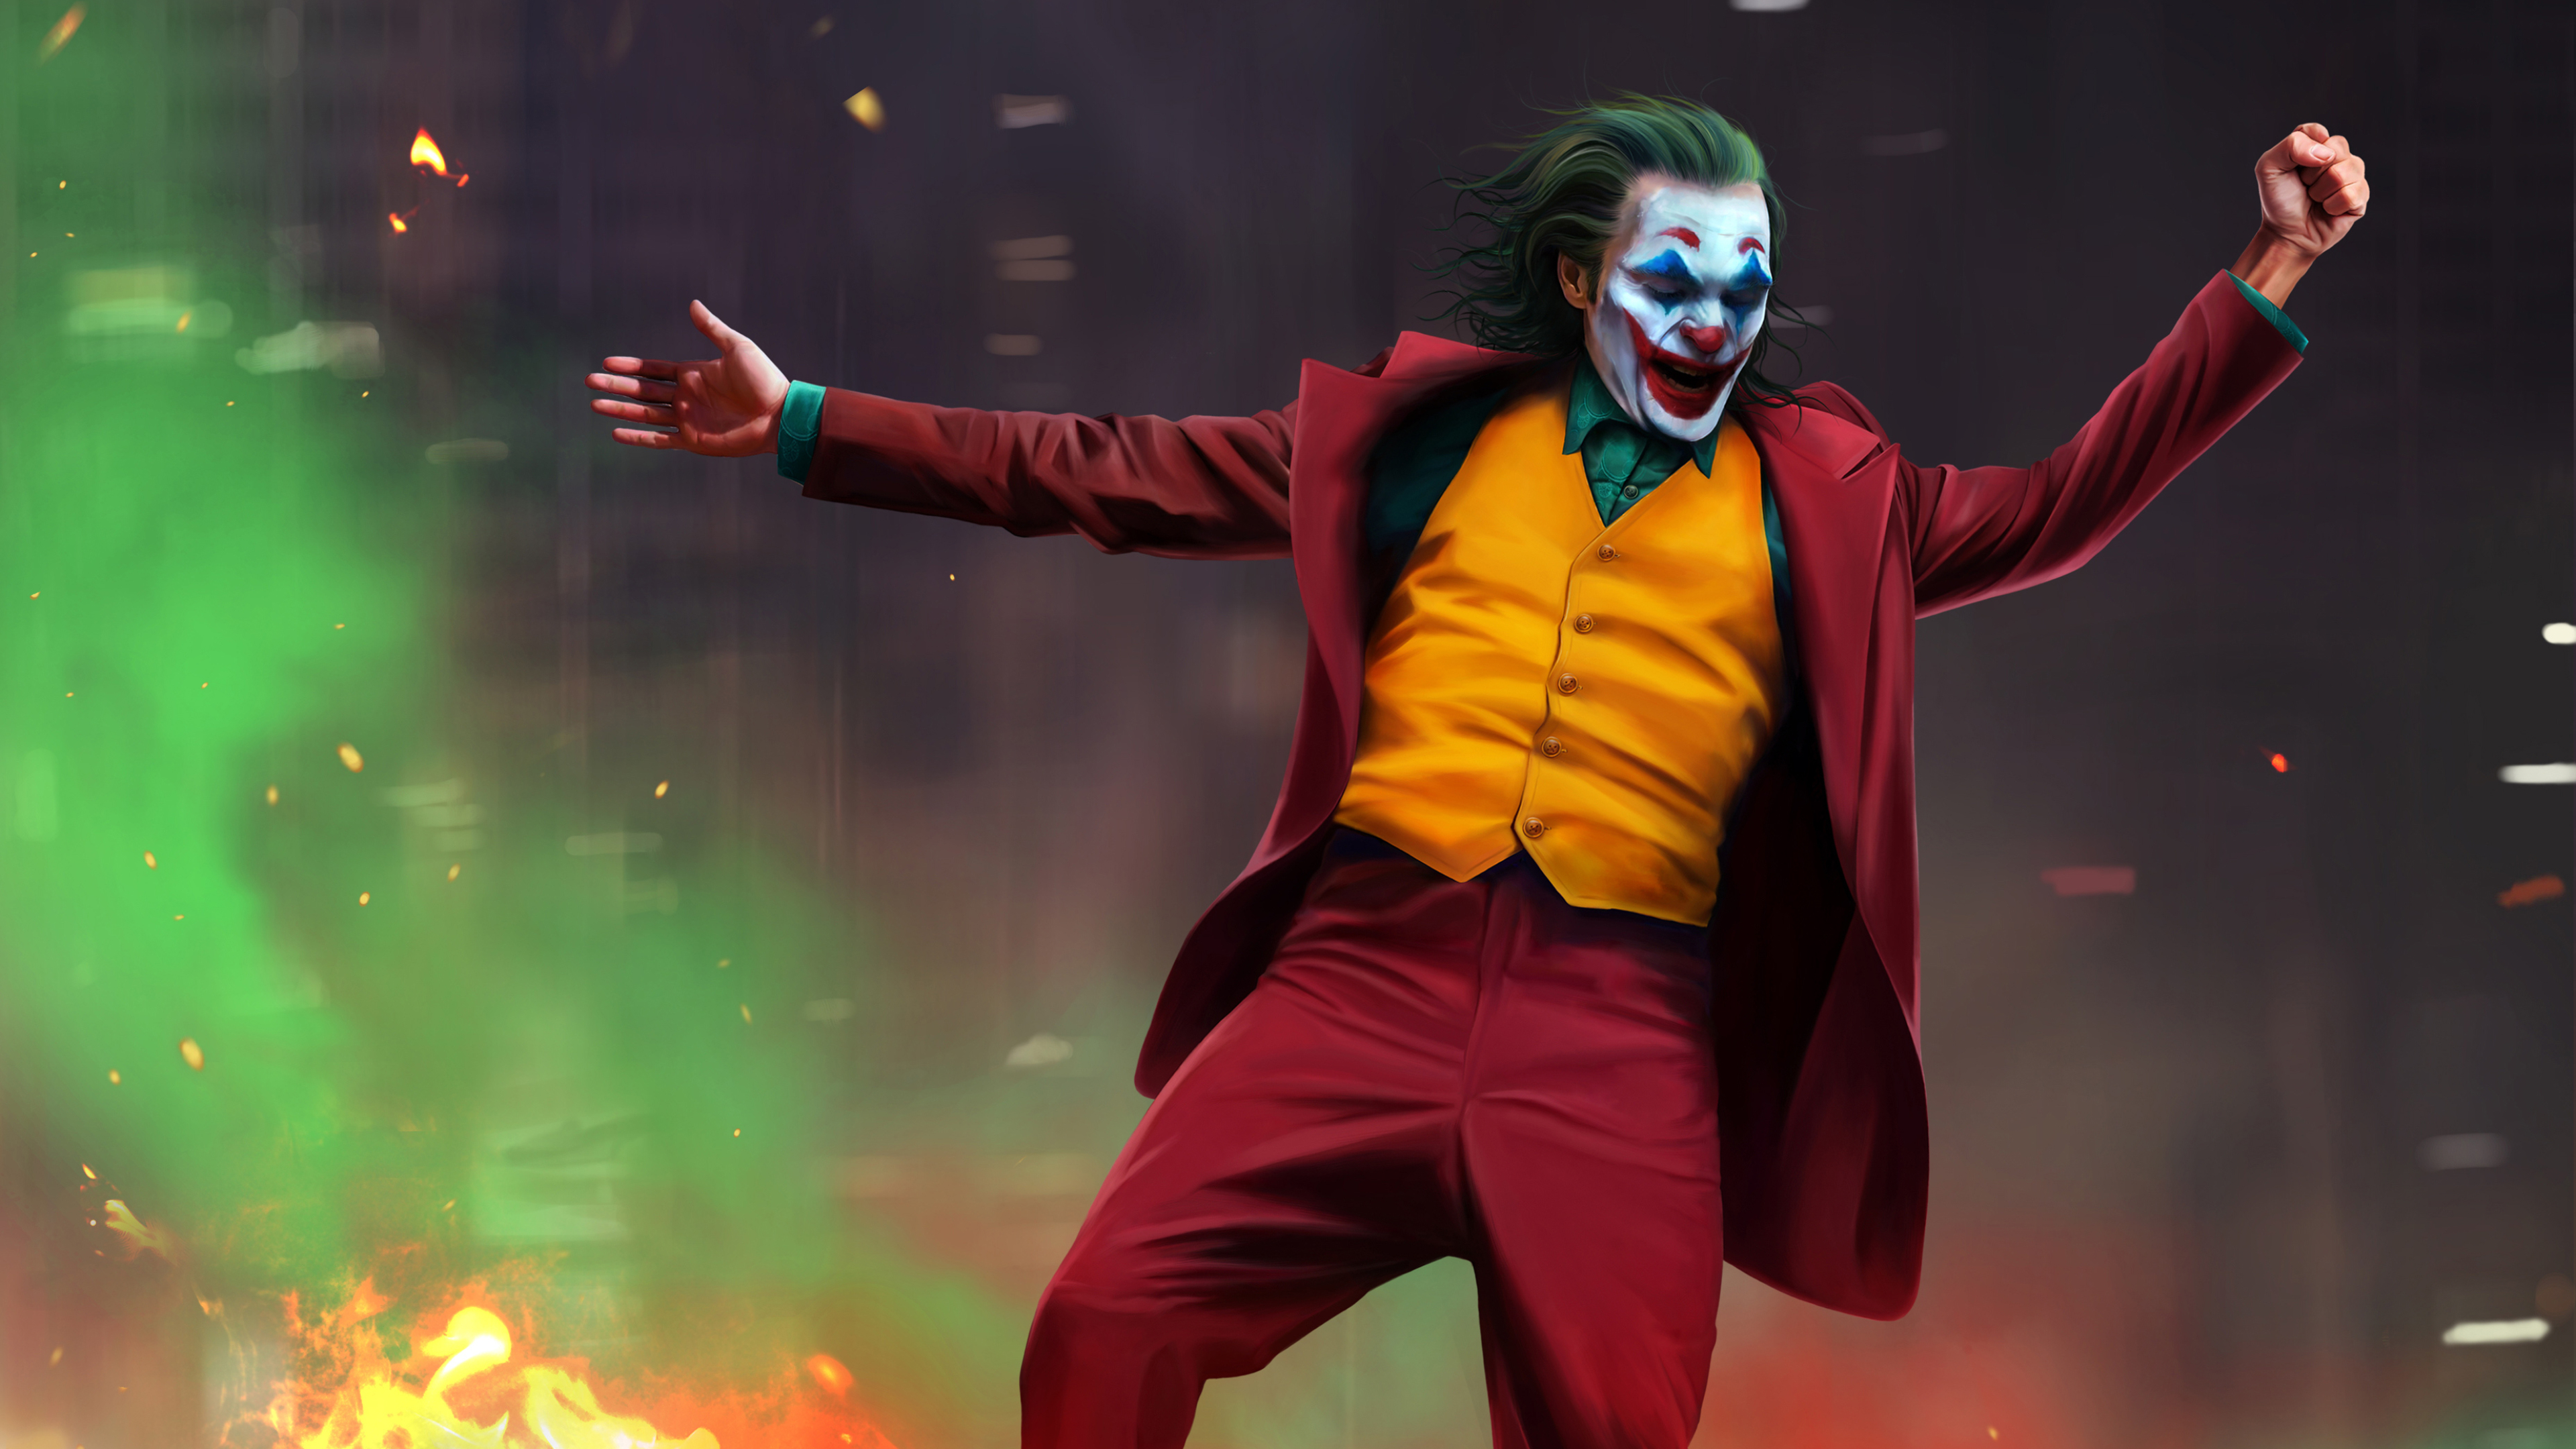 Mobile Phone Joker 2019 Joker Wallpaper Hd